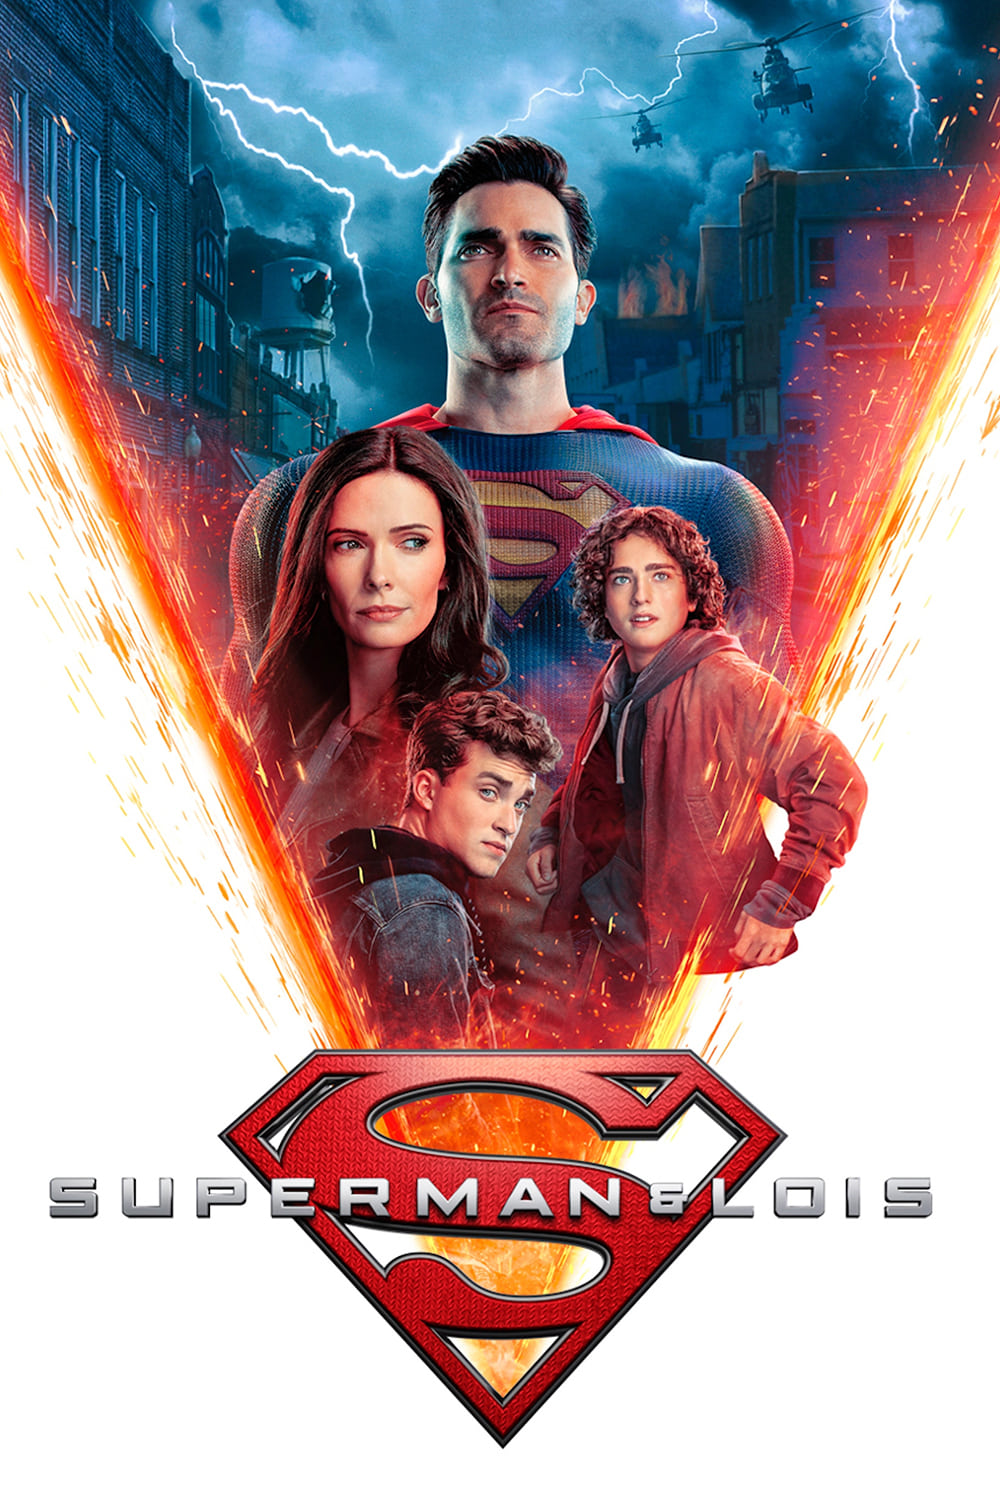 Superman & Lois TV Shows About Super Power